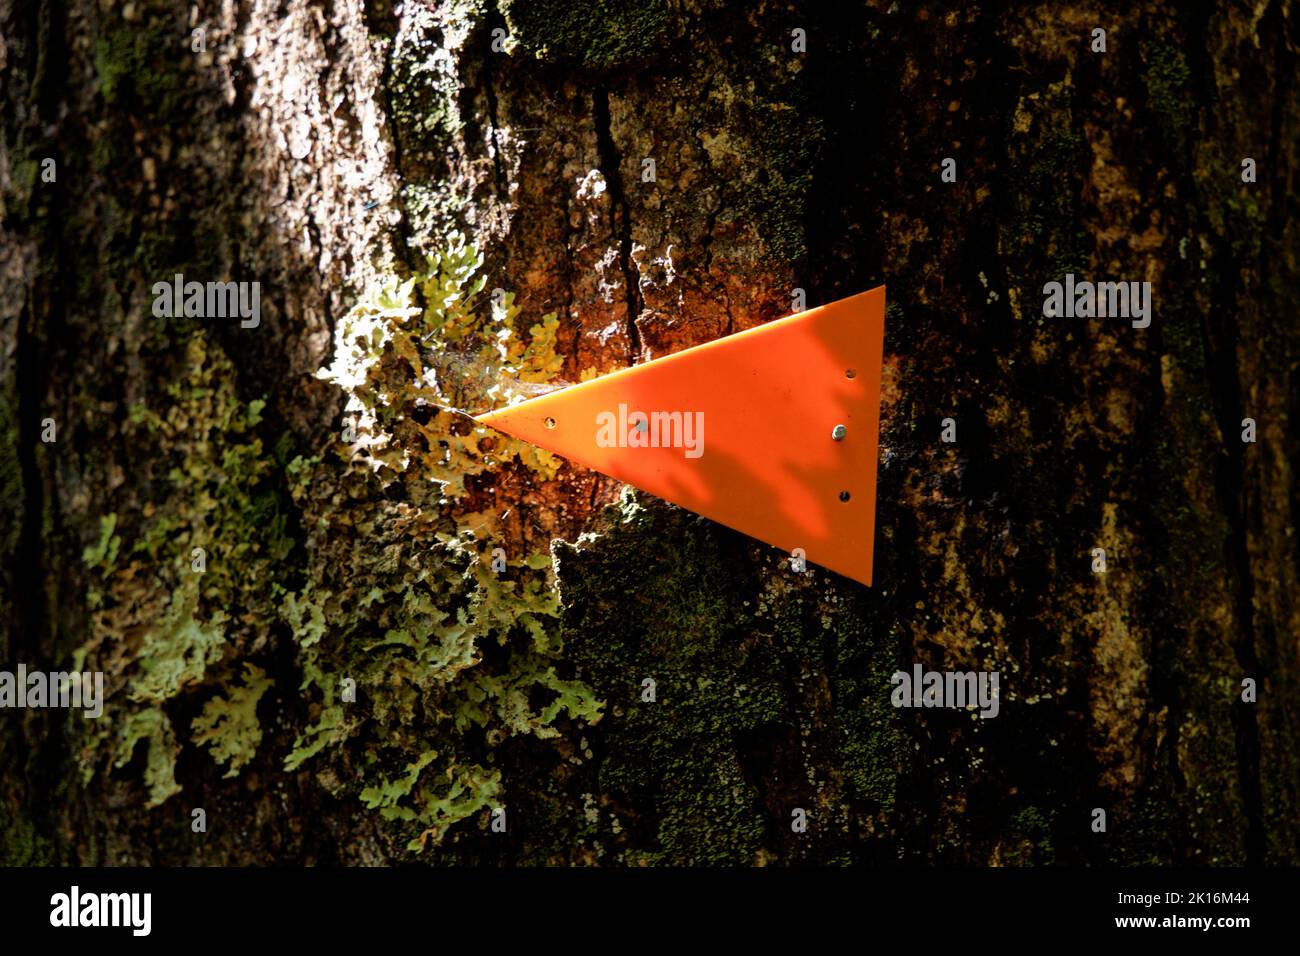 Typischer orangefarbener Trackmarker des Department of Conservation in einem Nationalpark, Aotearoa, Neuseeland. Stockfoto